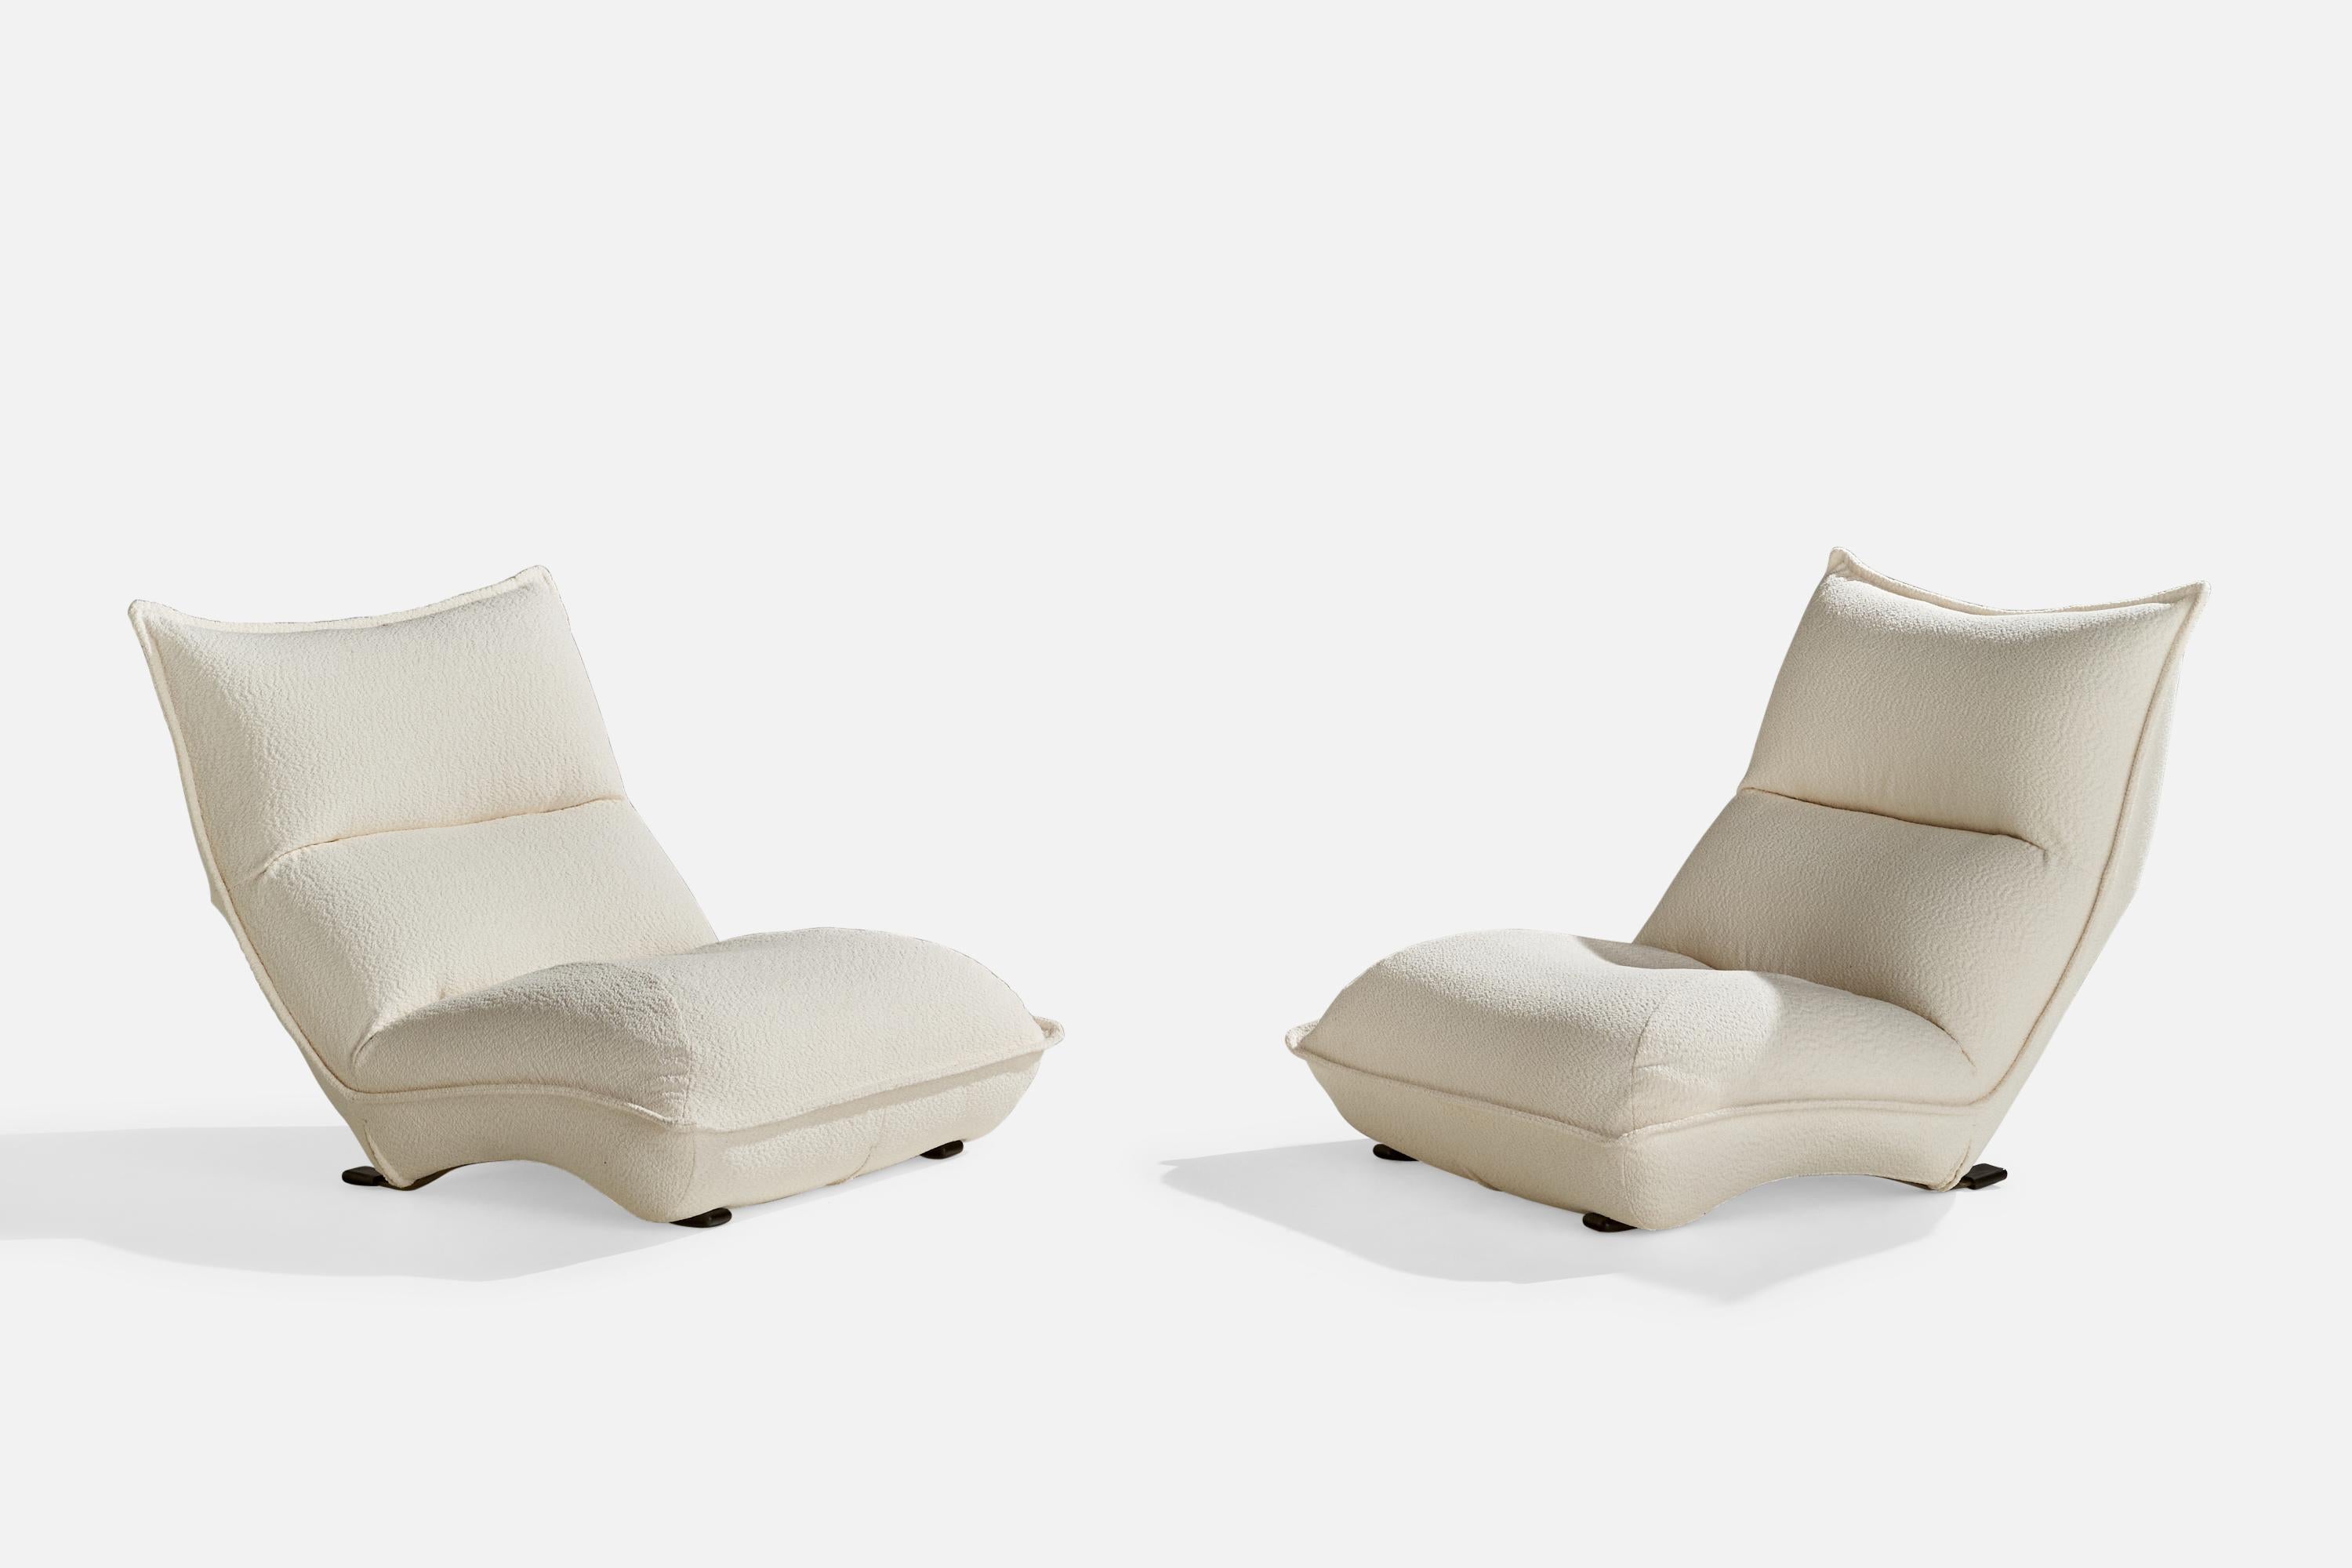 Paire de grandes chaises de salon en tissu blanc, métal et plastique, conçues par Vittorio Varo et produites par Plan Interior Design, Italie, années 1970.

Hauteur d'assise 12